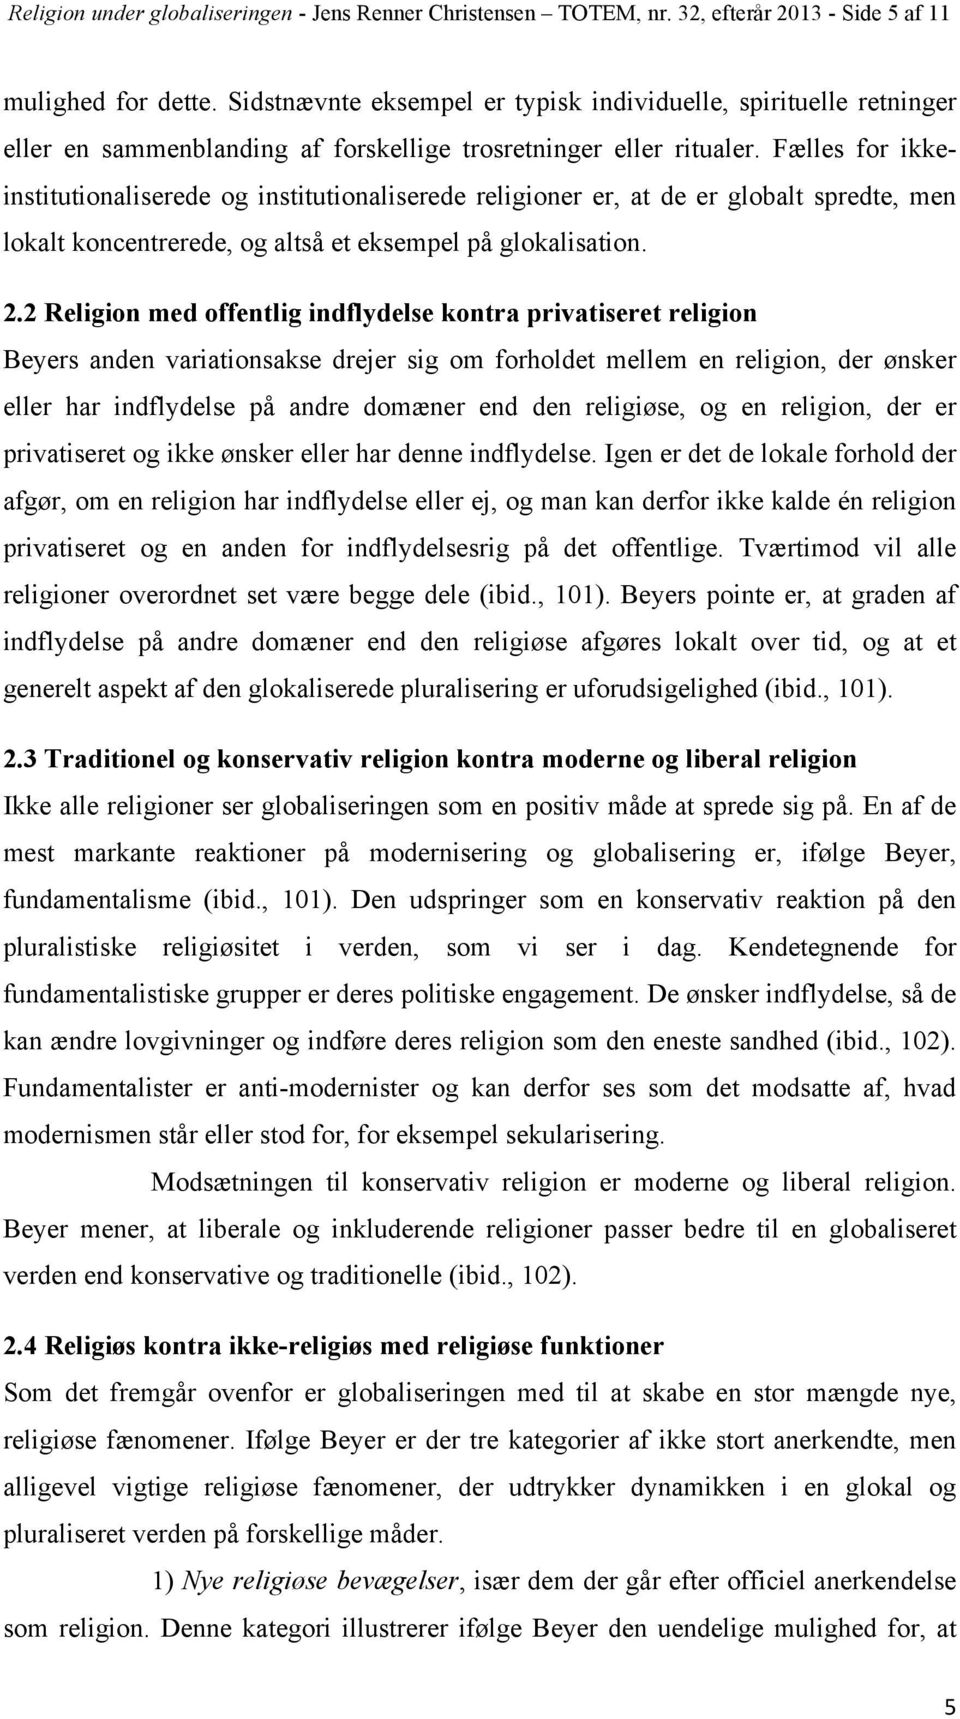 Fælles for ikkeinstitutionaliserede og institutionaliserede religioner er, at de er globalt spredte, men lokalt koncentrerede, og altså et eksempel på glokalisation. 2.